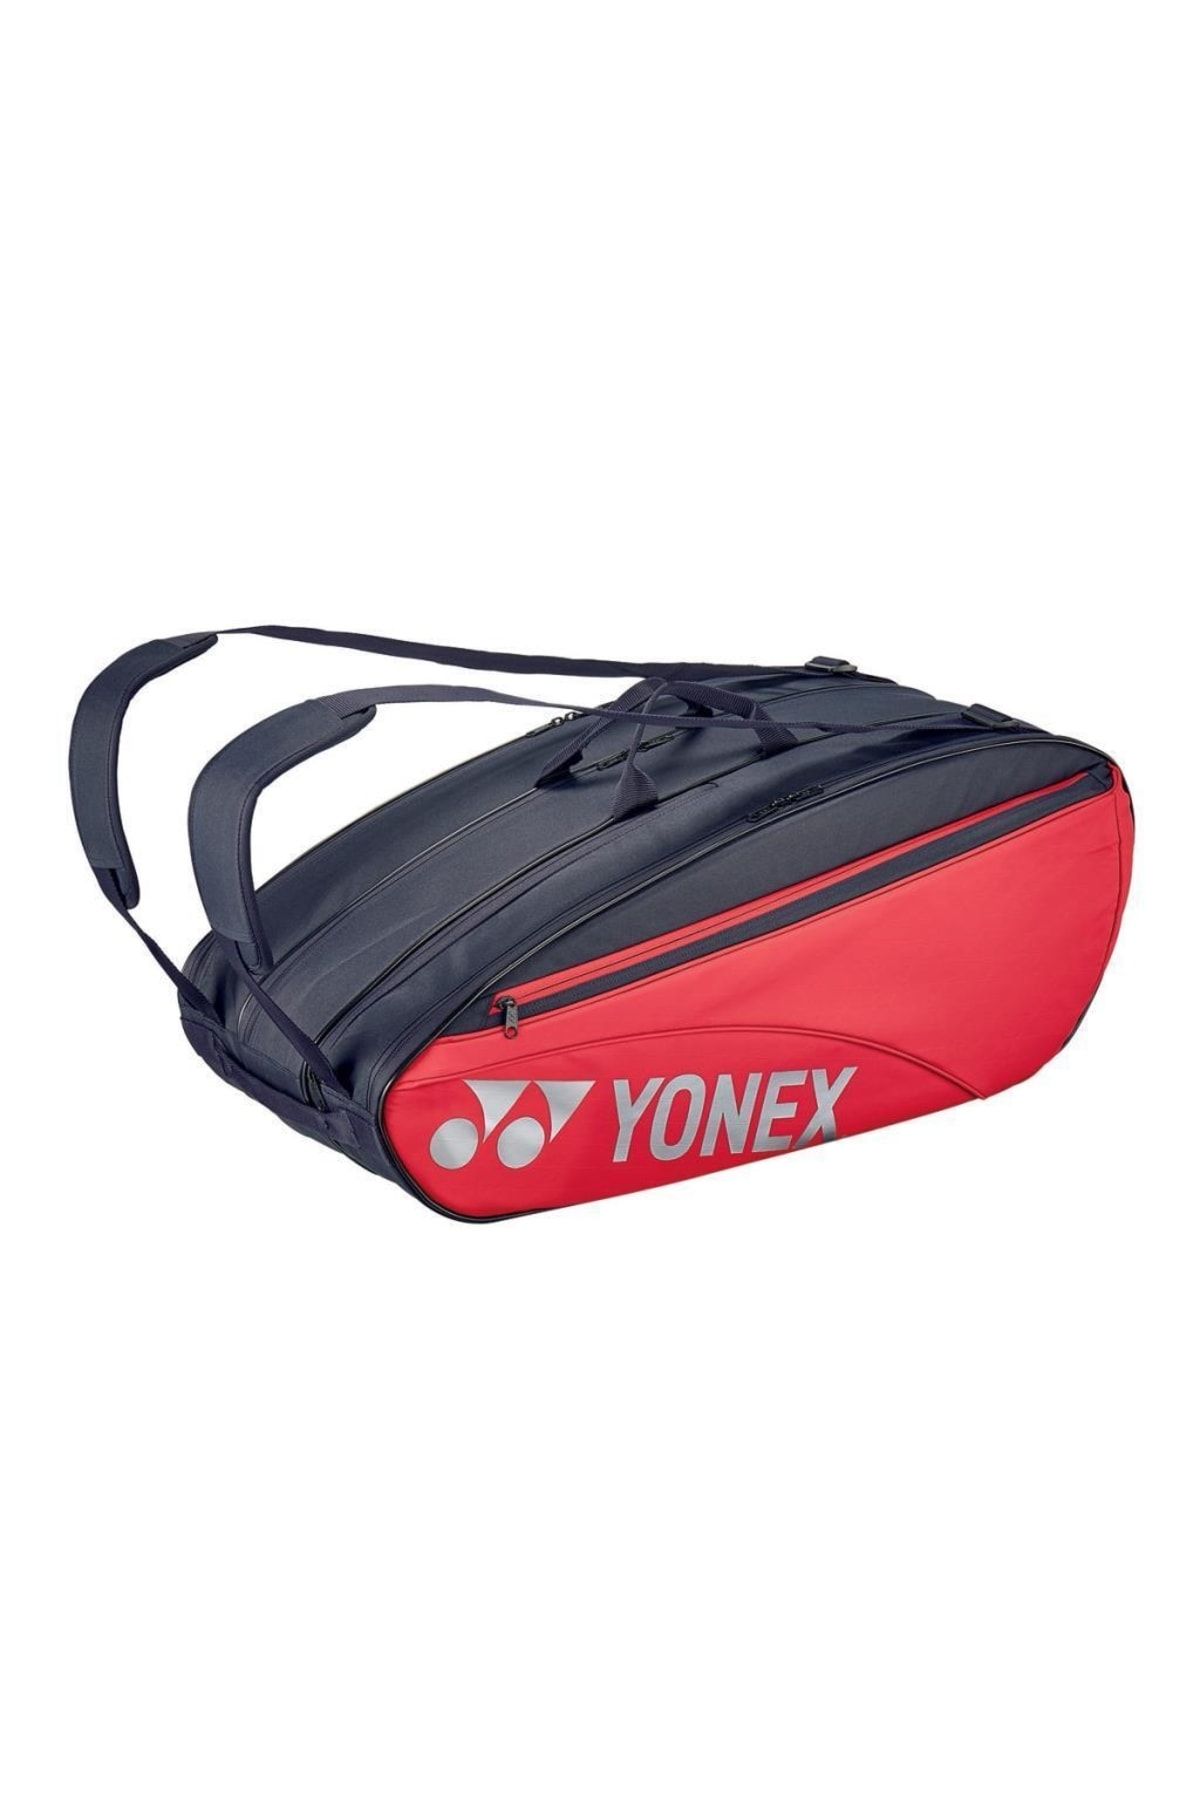 Yonex Pro 42329 Scarlet Kırmızı Tenis Çantası 9 Raketli Ayakkabı Bölmeli